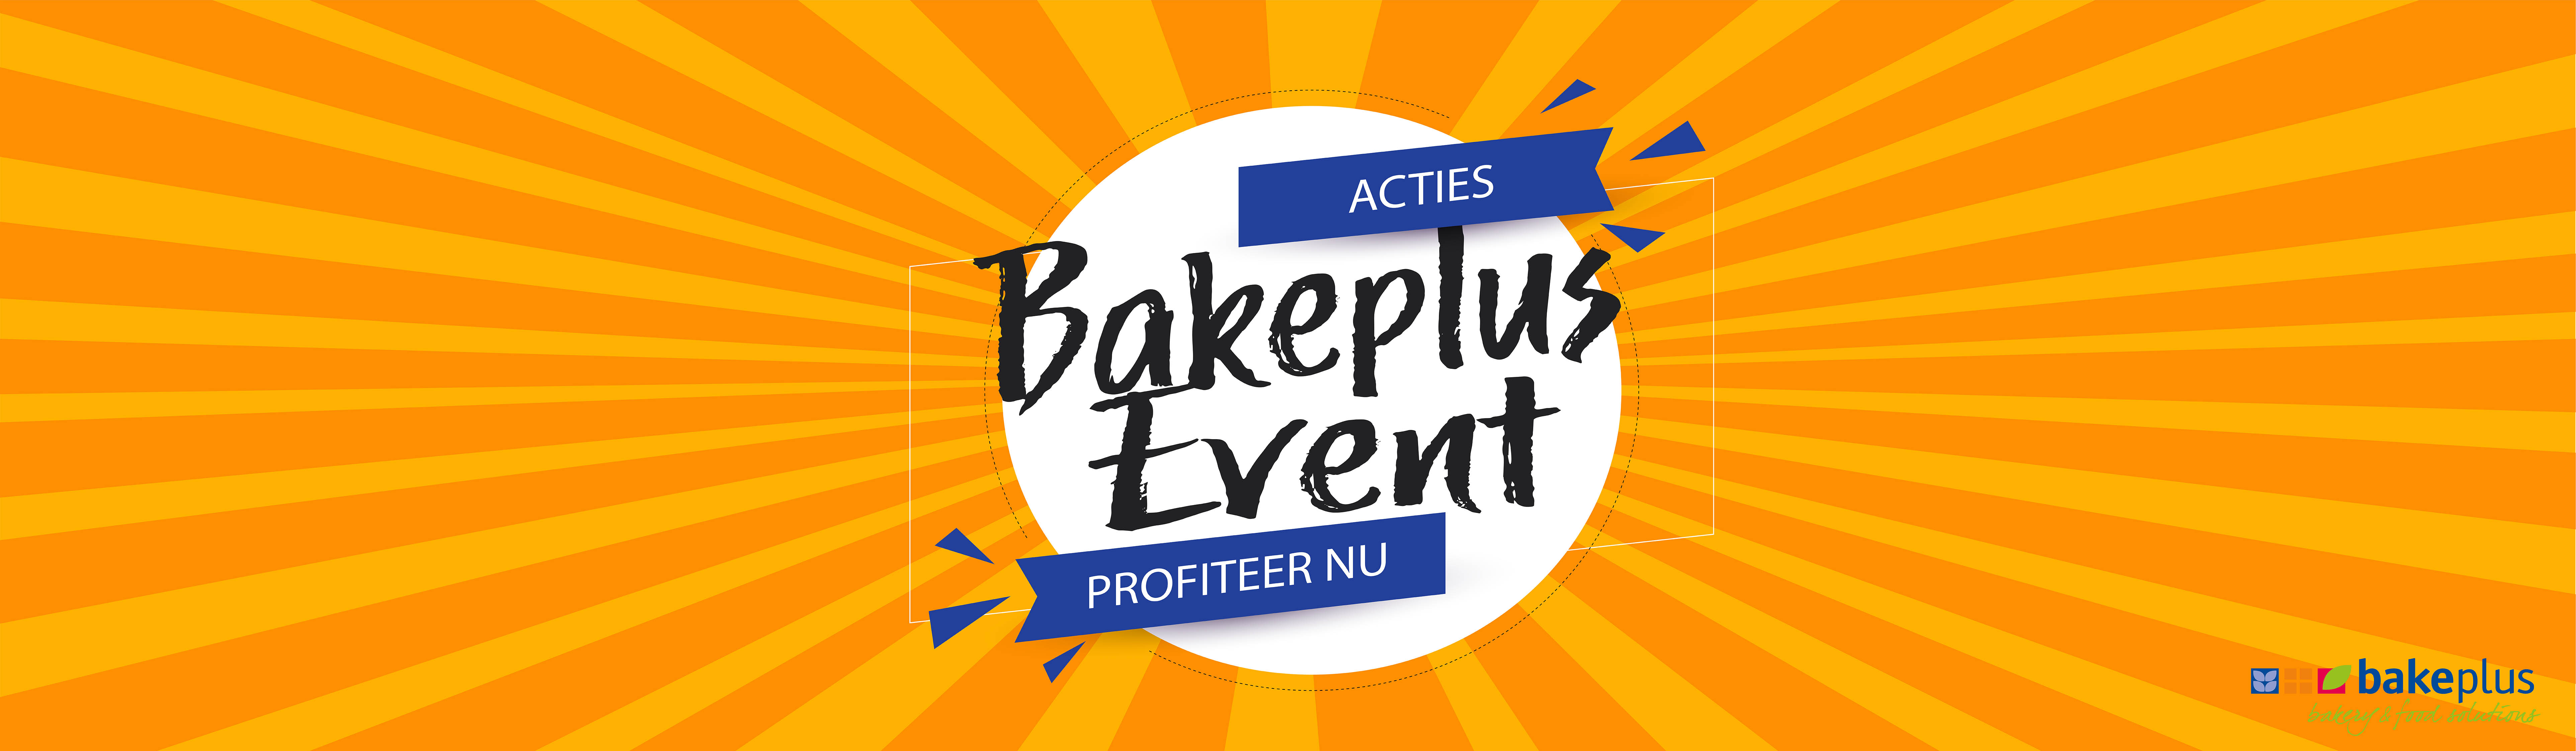 Bakeplus_event_banner_acties.jpg